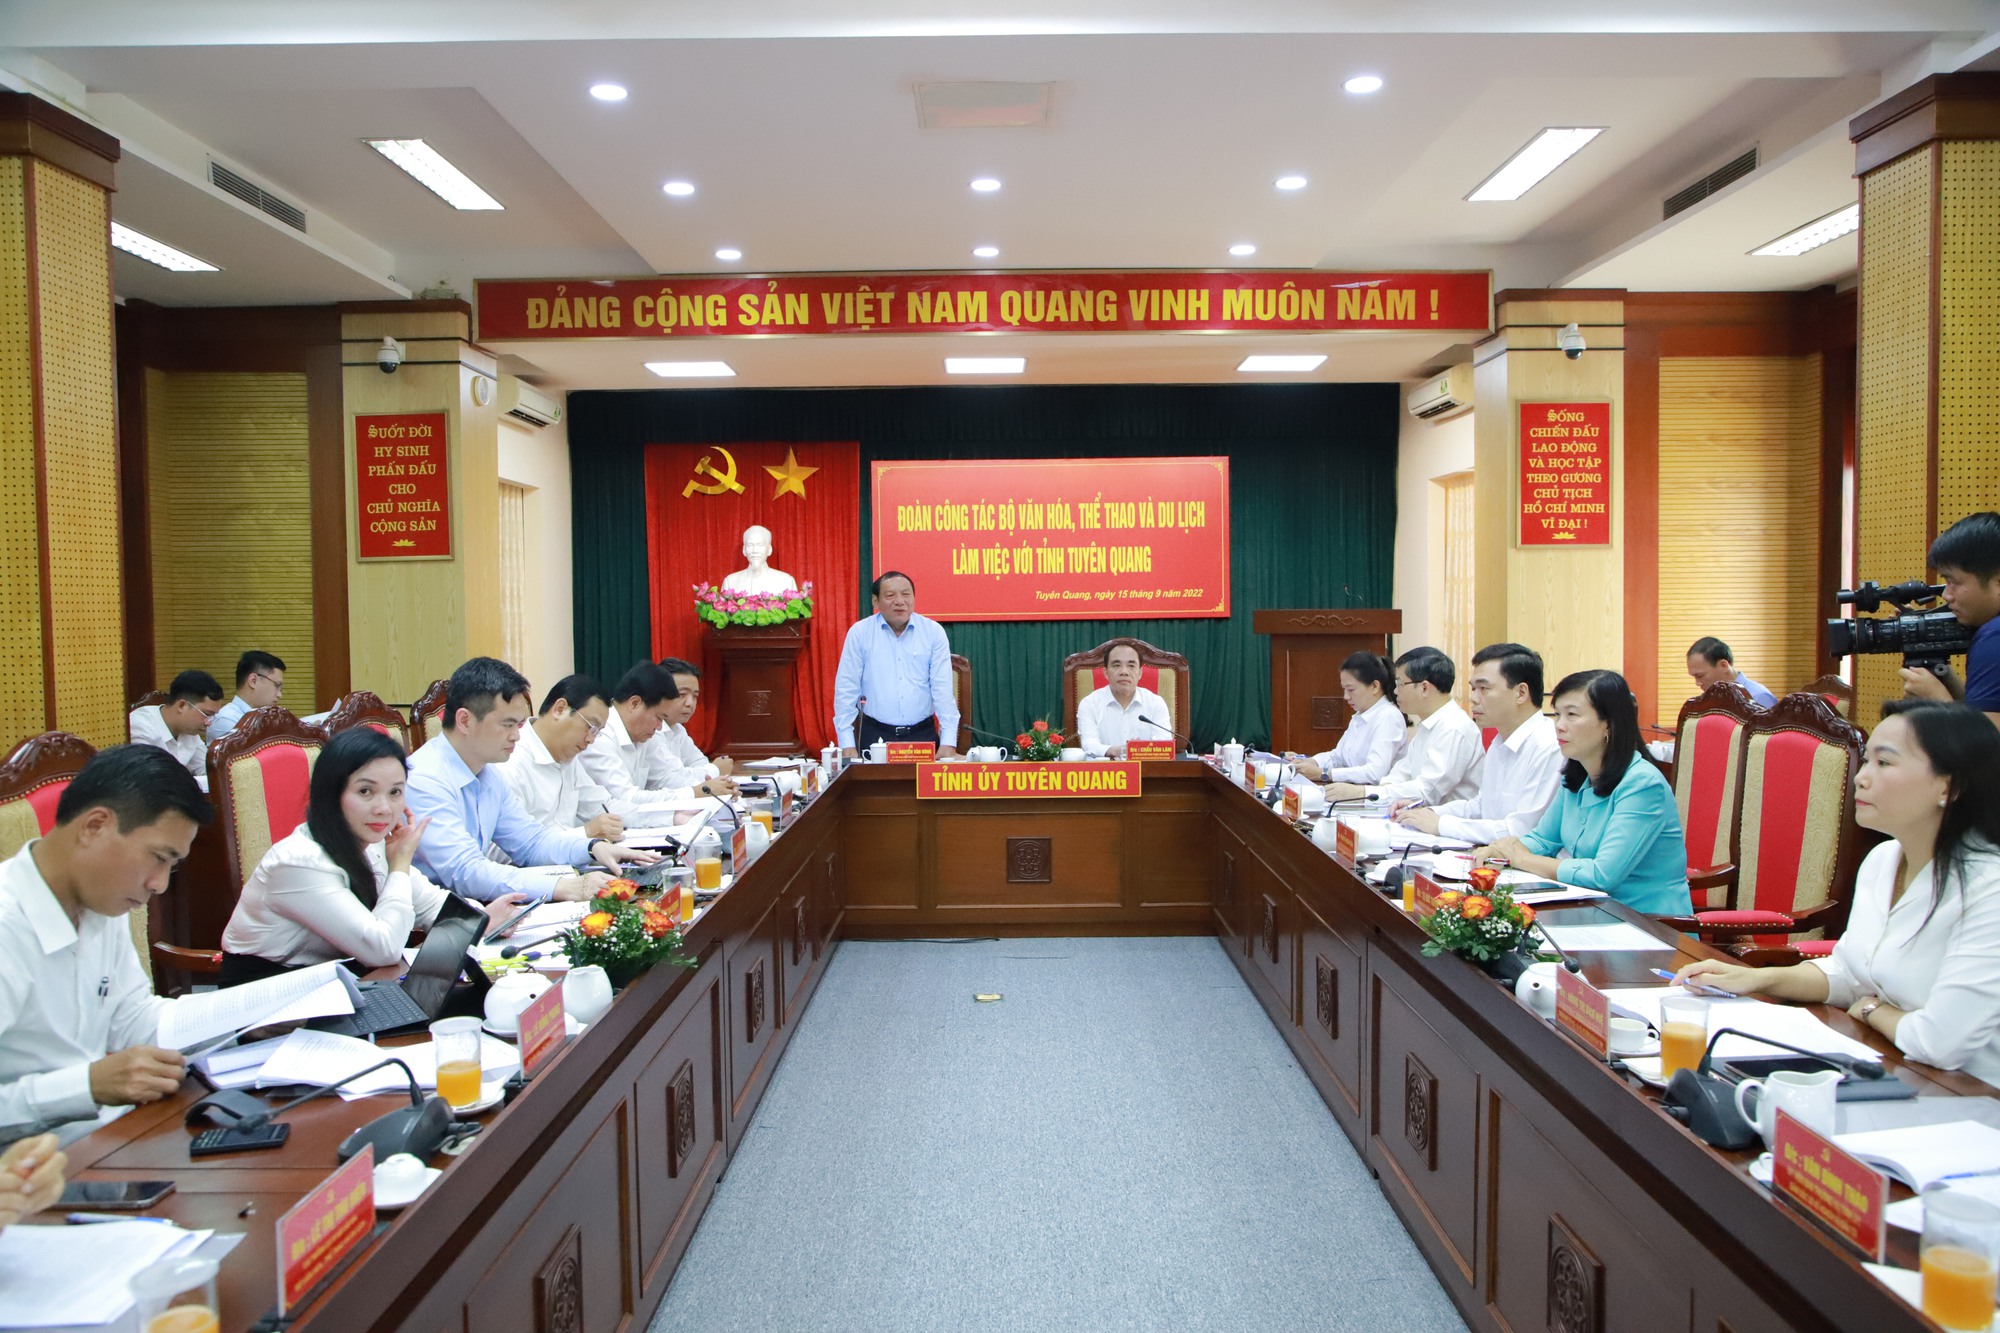 Bộ trưởng Nguyễn Văn Hùng: Giữ gìn phát huy bản sắc văn hóa dân tộc, bảo tồn tôn tạo và phát huy các di tích lịch sẽ kiến tạo sự bền vững - Ảnh 5.